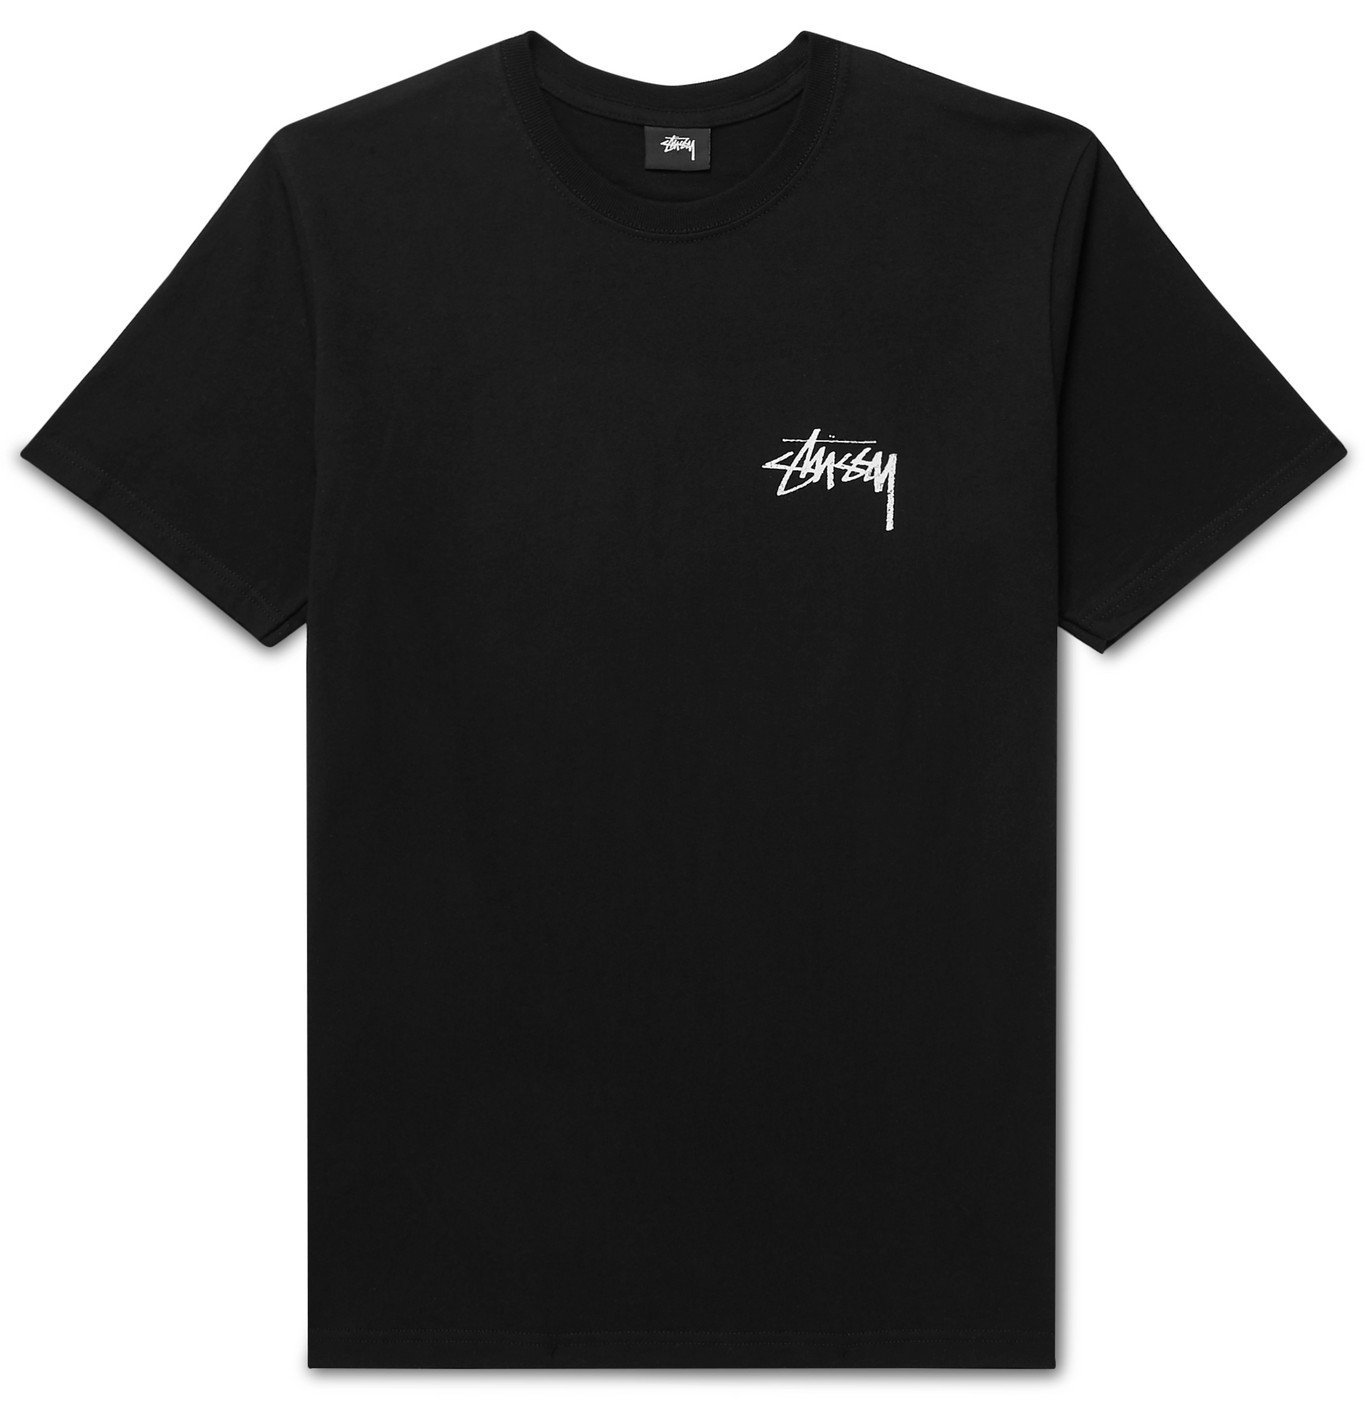 Stüssy - Printed Cotton-Jersey T-Shirt - Black Stussy